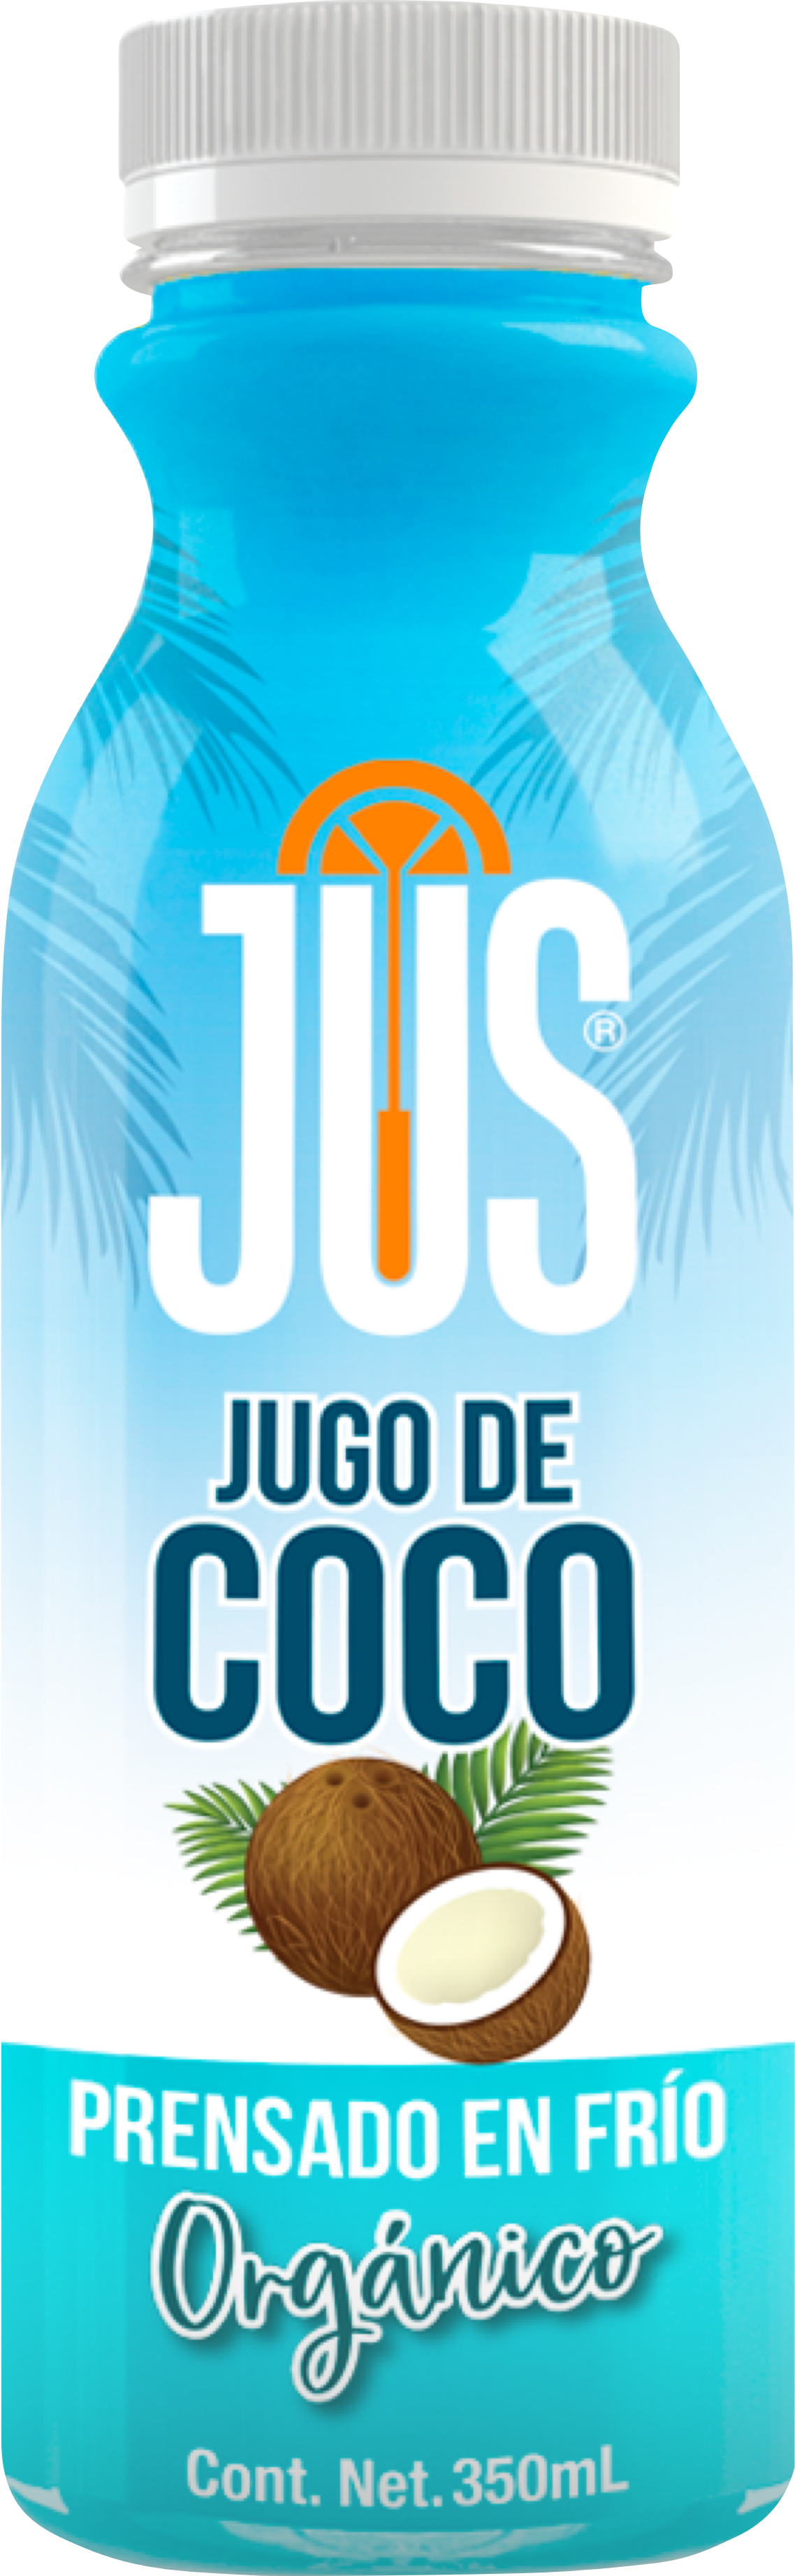 Coco Orgánico - Naturalmente rehidratante y vigorizante.